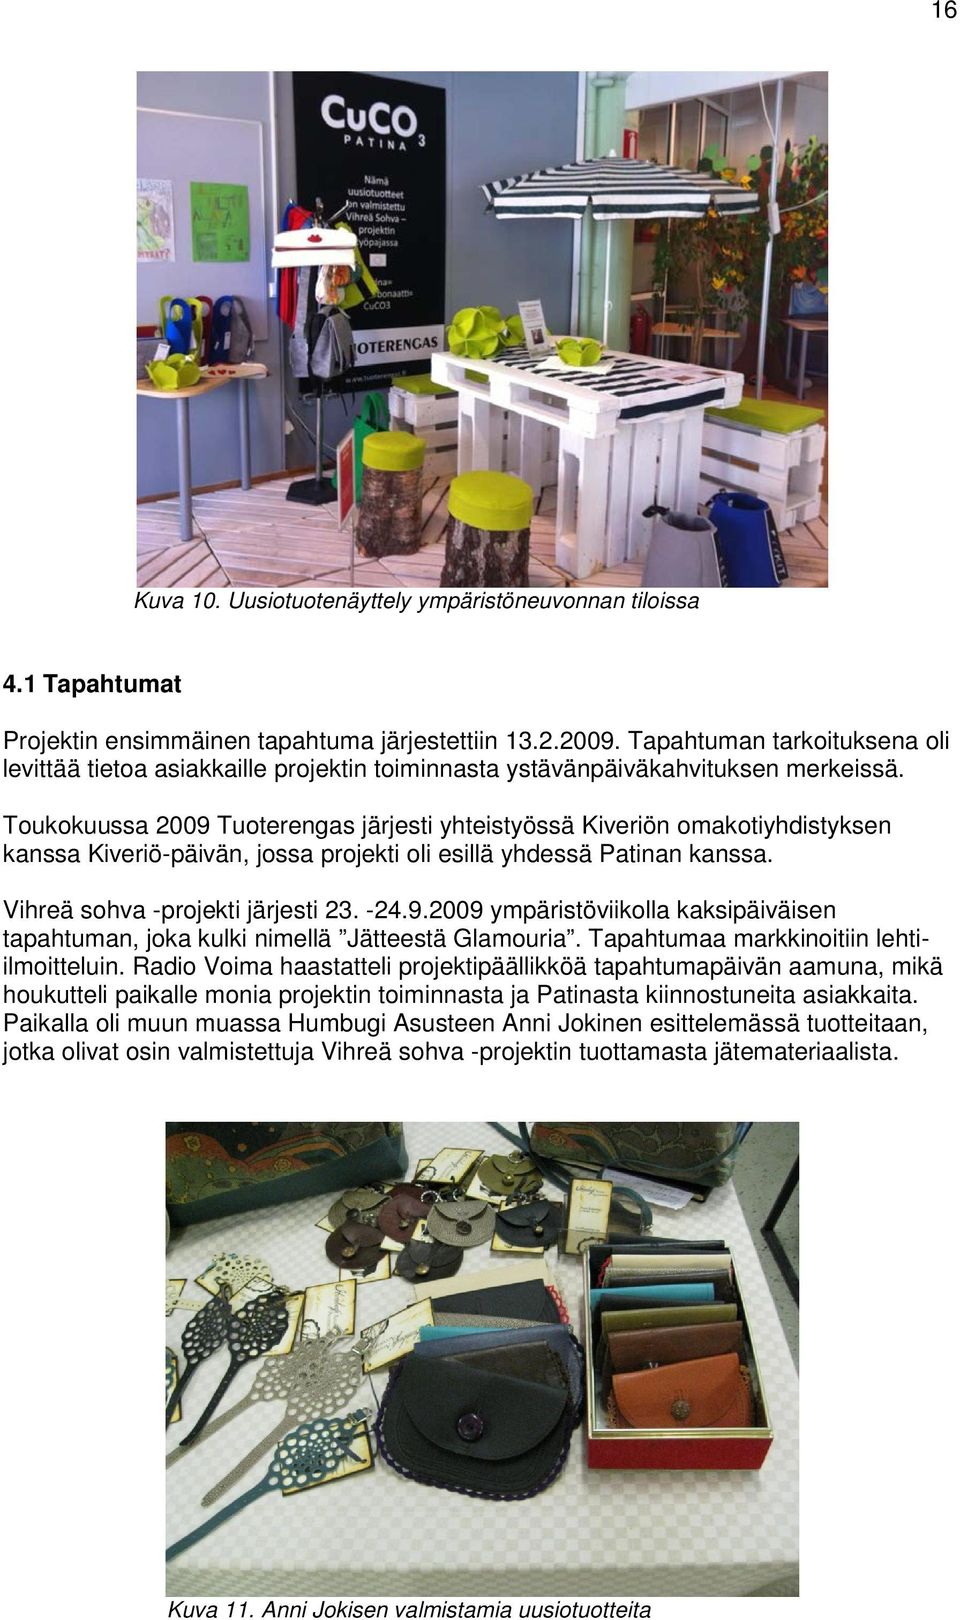 Toukokuussa 2009 Tuoterengas järjesti yhteistyössä Kiveriön omakotiyhdistyksen kanssa Kiveriö-päivän, jossa projekti oli esillä yhdessä Patinan kanssa. Vihreä sohva -projekti järjesti 23. -24.9.2009 ympäristöviikolla kaksipäiväisen tapahtuman, joka kulki nimellä Jätteestä Glamouria.